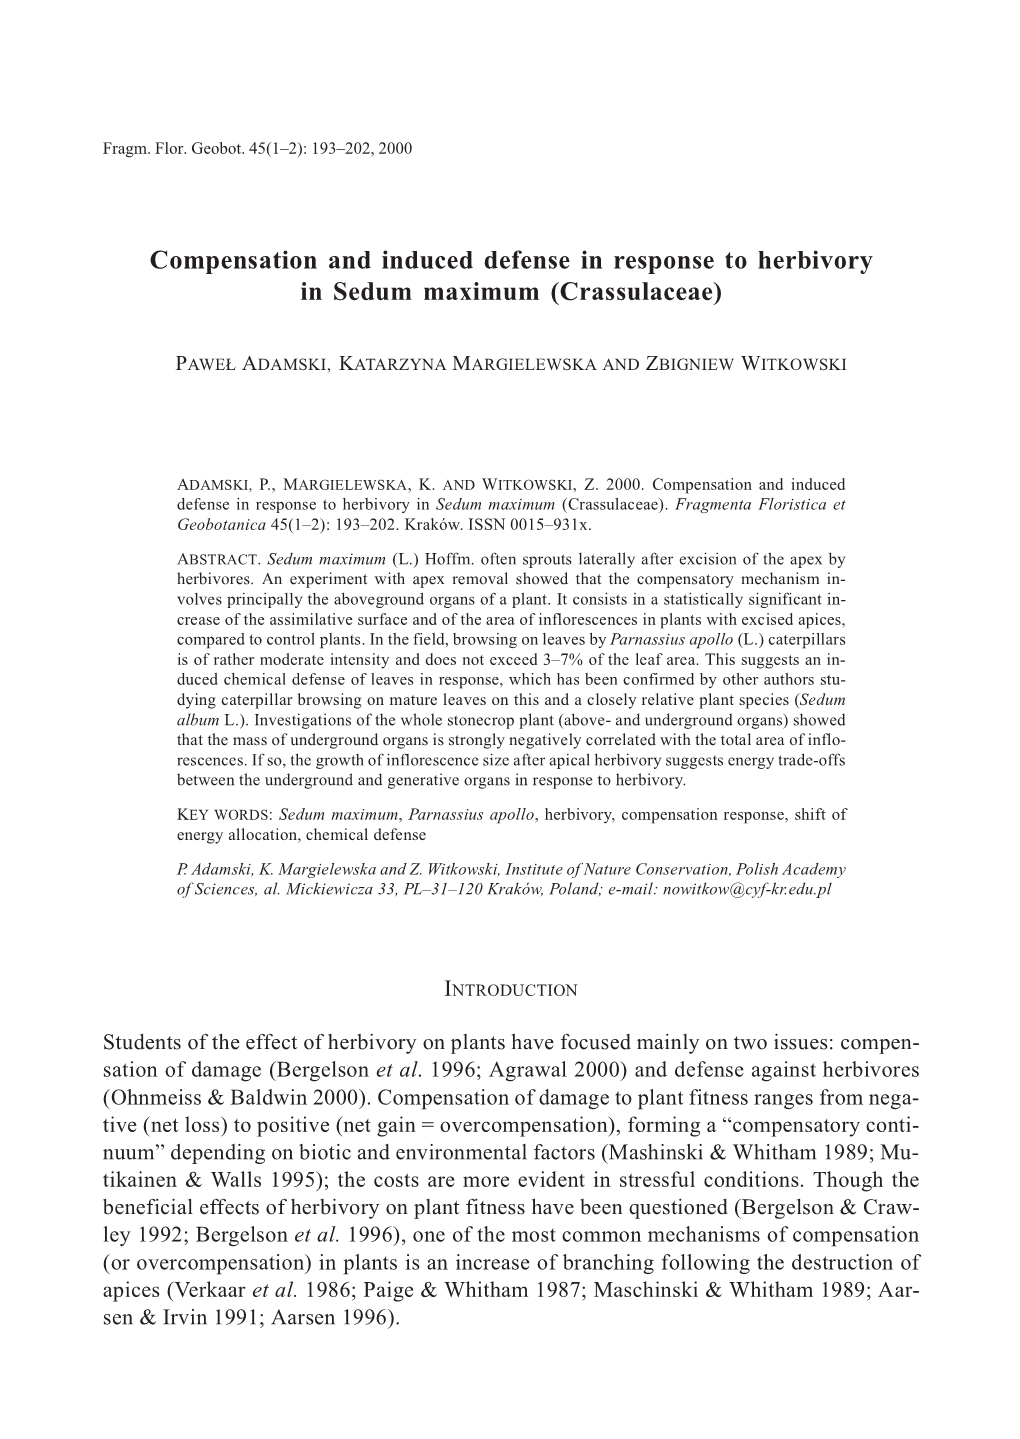 Compensation and Induced Defense in Response to Herbivory in Sedum Maximum (Crassulaceae)